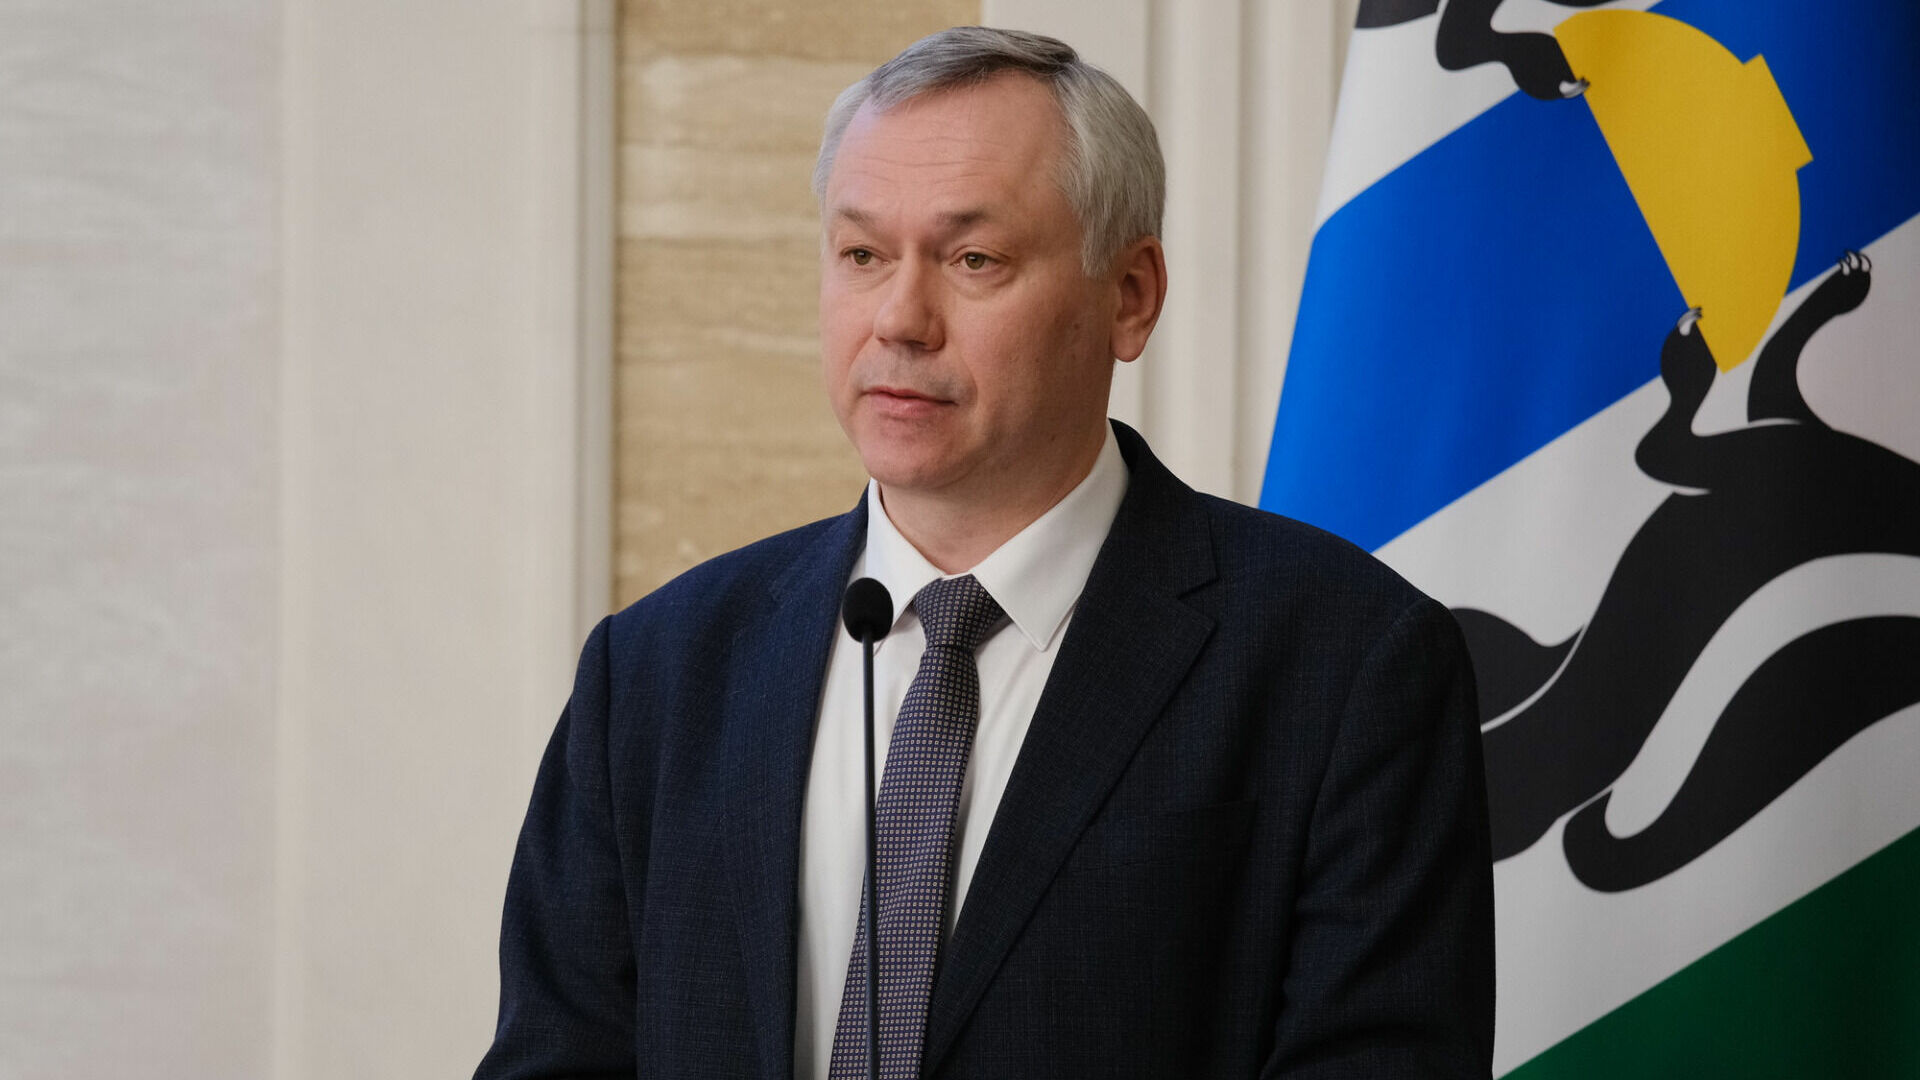 Губернатор Андрей Травников